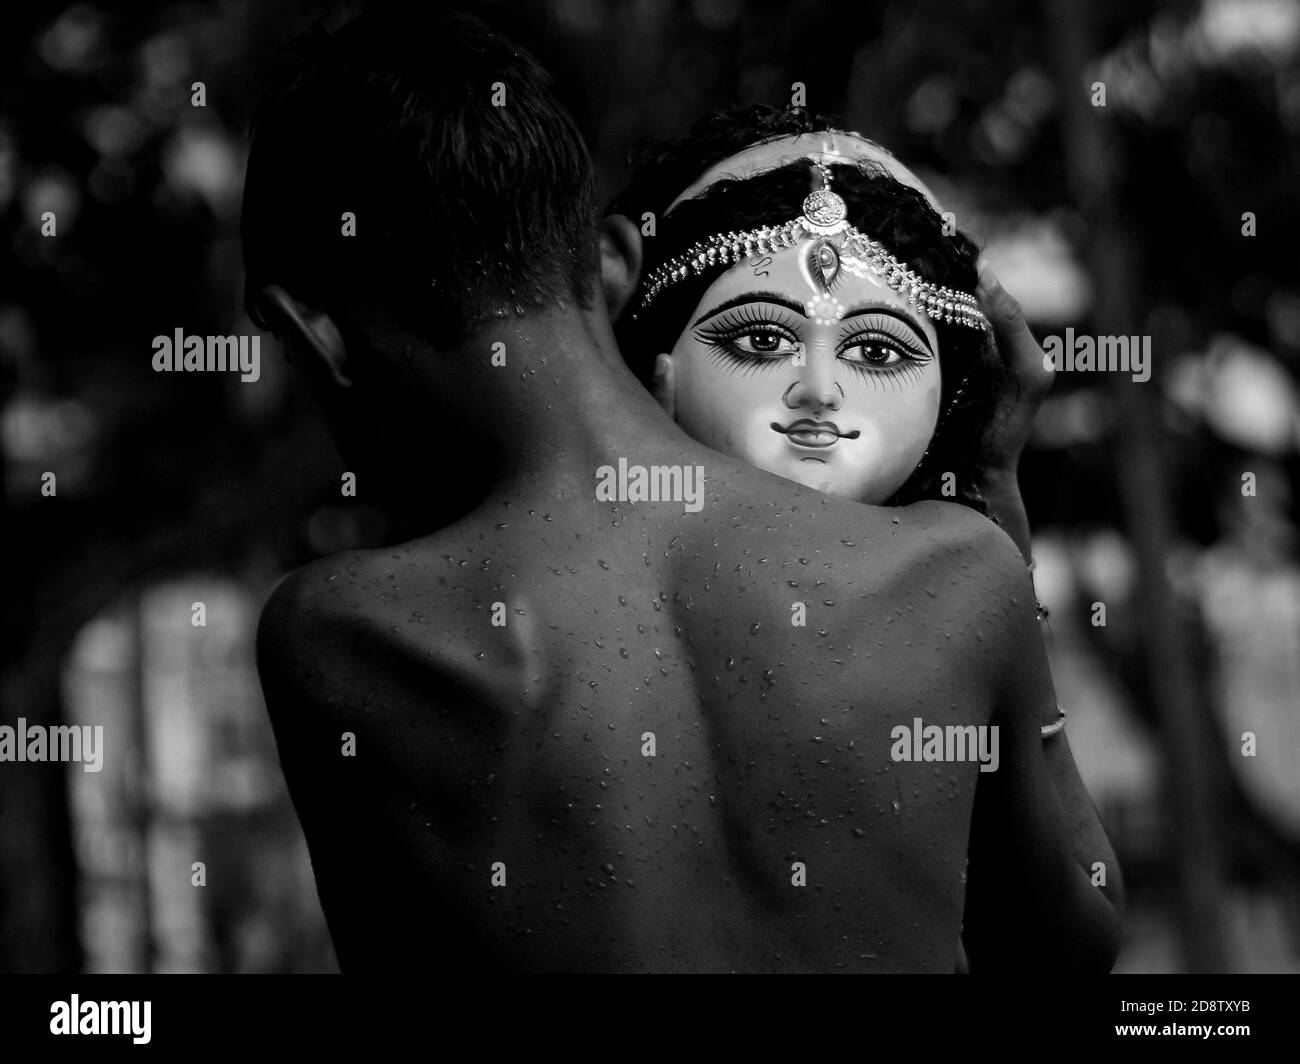 Un niño sostiene la cabeza de un ídolo de la diosa Durga durante una ceremonia de inmersión para Dashami, el último día del festival Durga Puja. El festival es el mayor evento religioso para los hindúes bengalíes. Los hindúes creen que la diosa Durga simboliza el poder y el triunfo del bien sobre el mal. Agartala, Tripura, India. Foto de stock